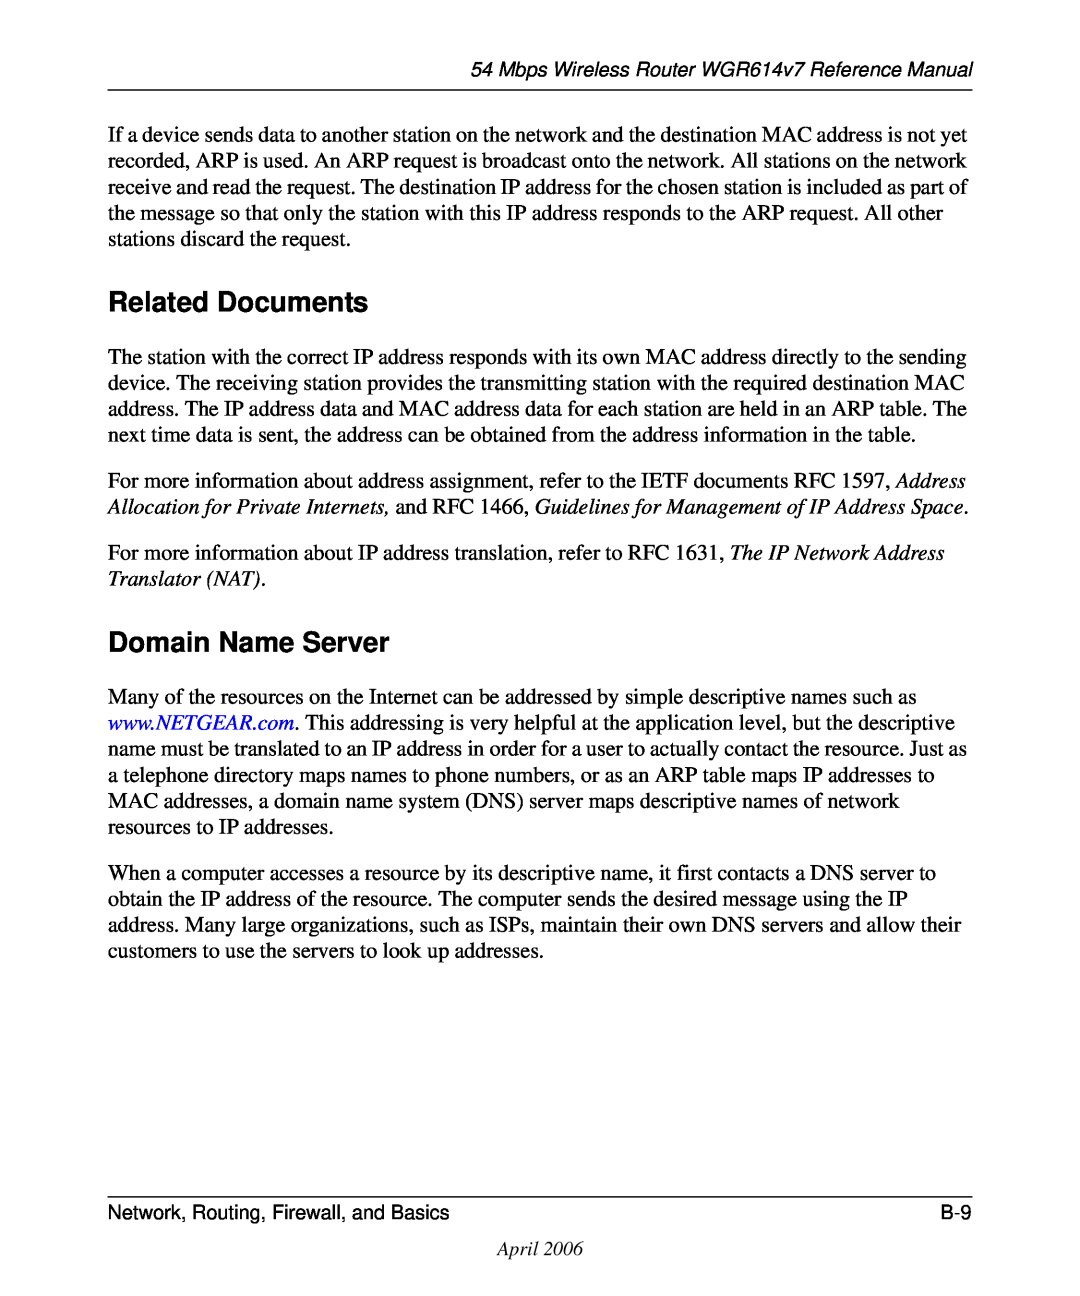 NETGEAR WGR614v7 manual Related Documents, Domain Name Server 